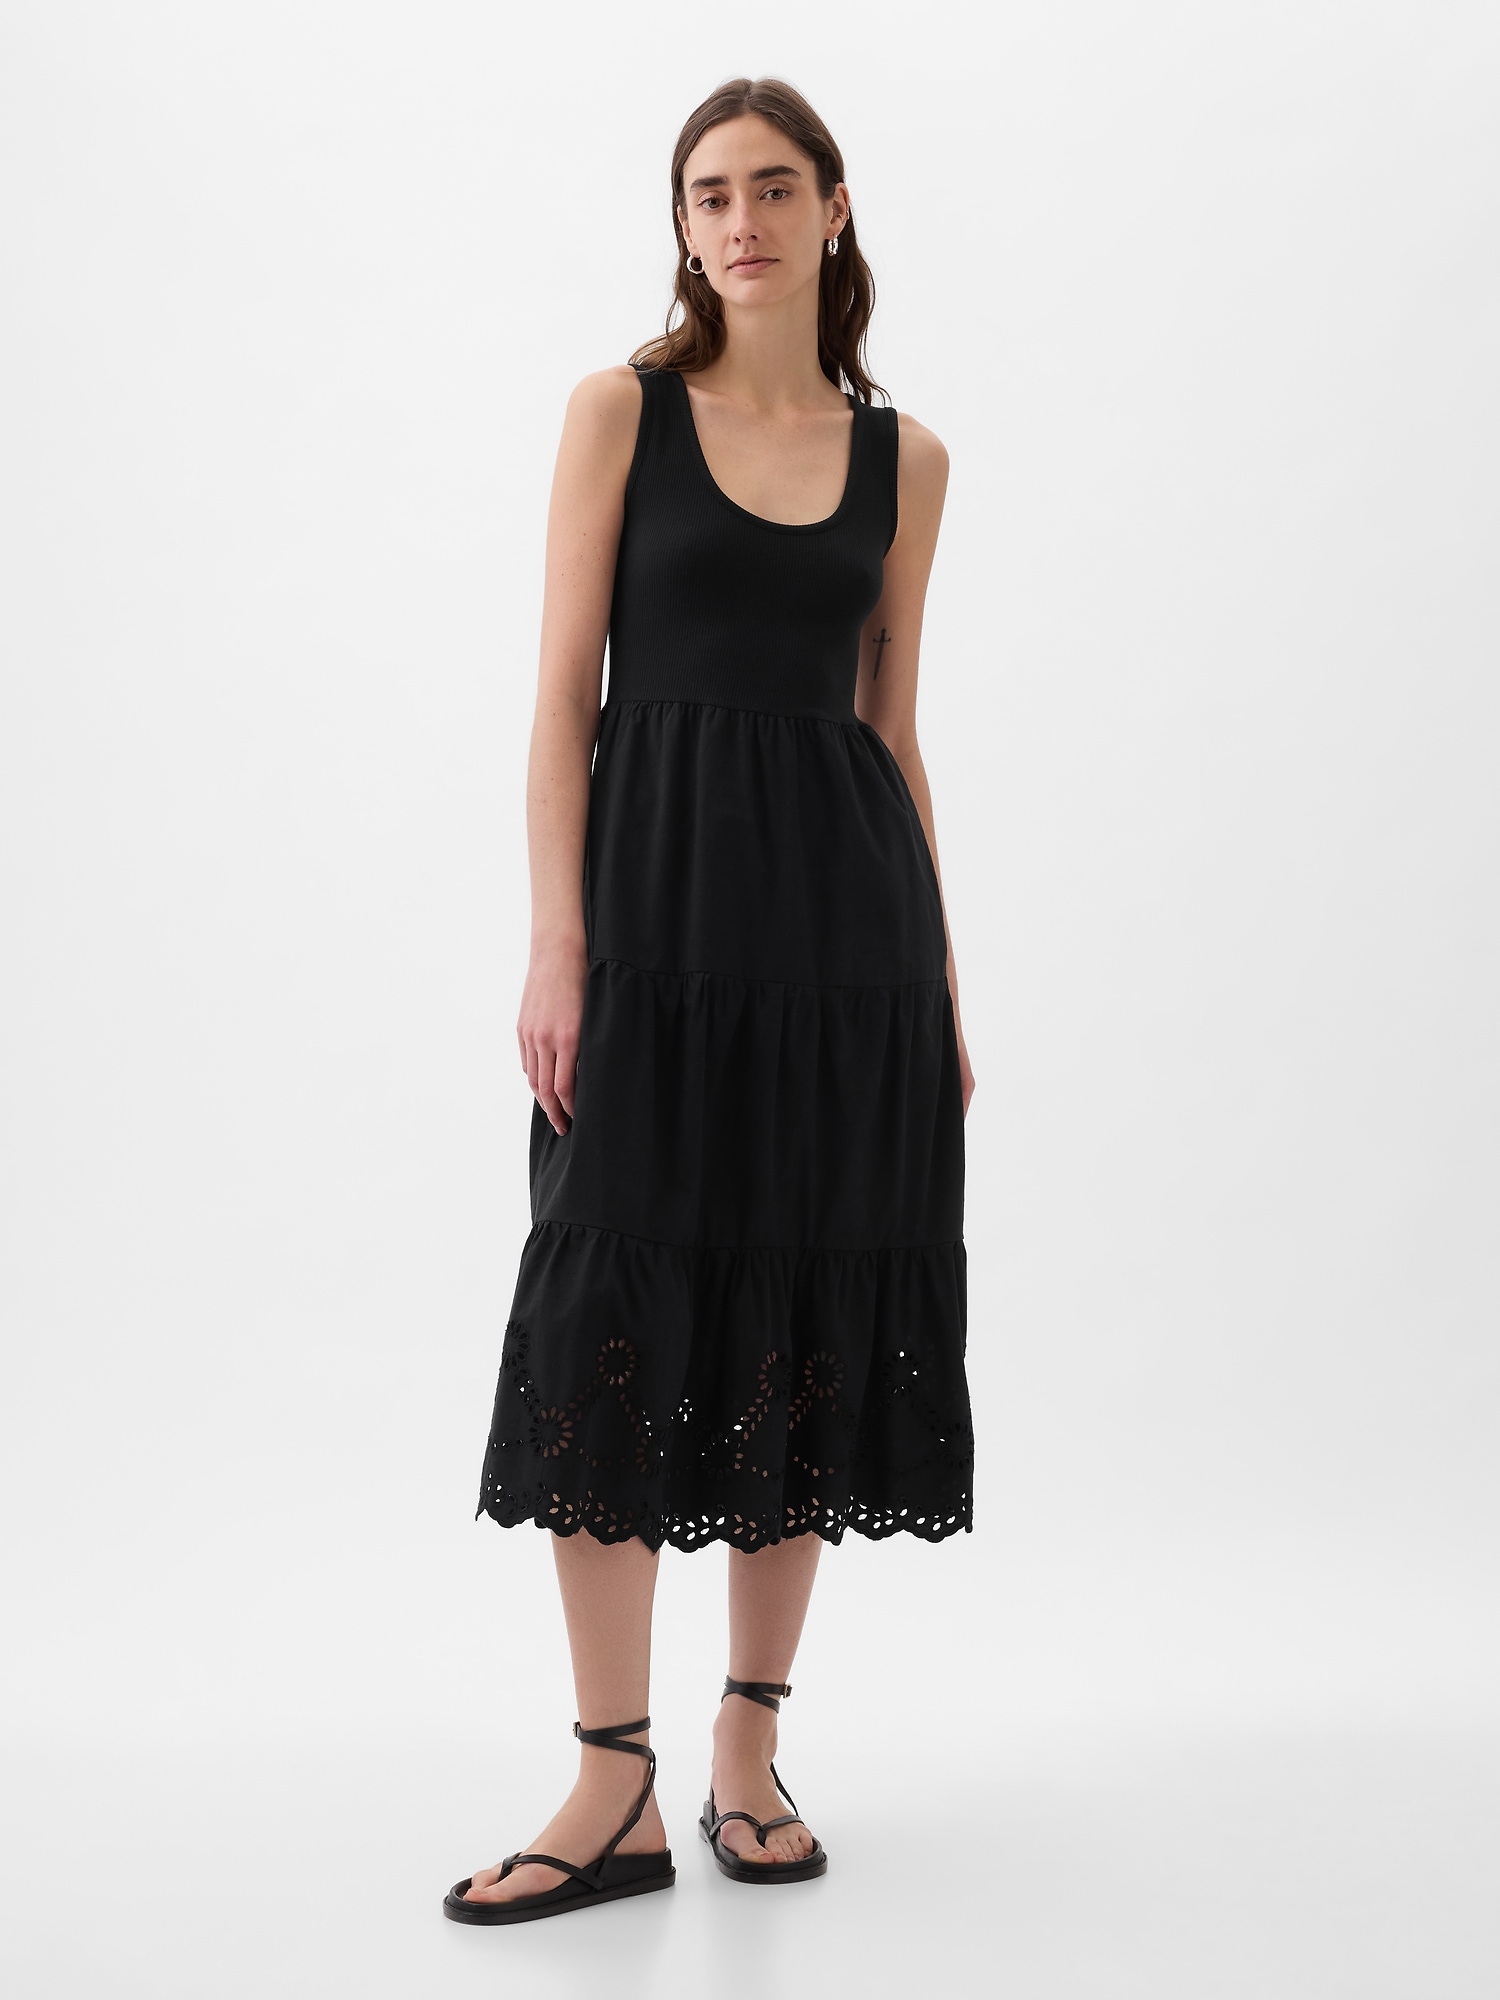 GAP, Dresses, Gap Summer Black Halter Top Shelf Bra Short Dress Medium 7